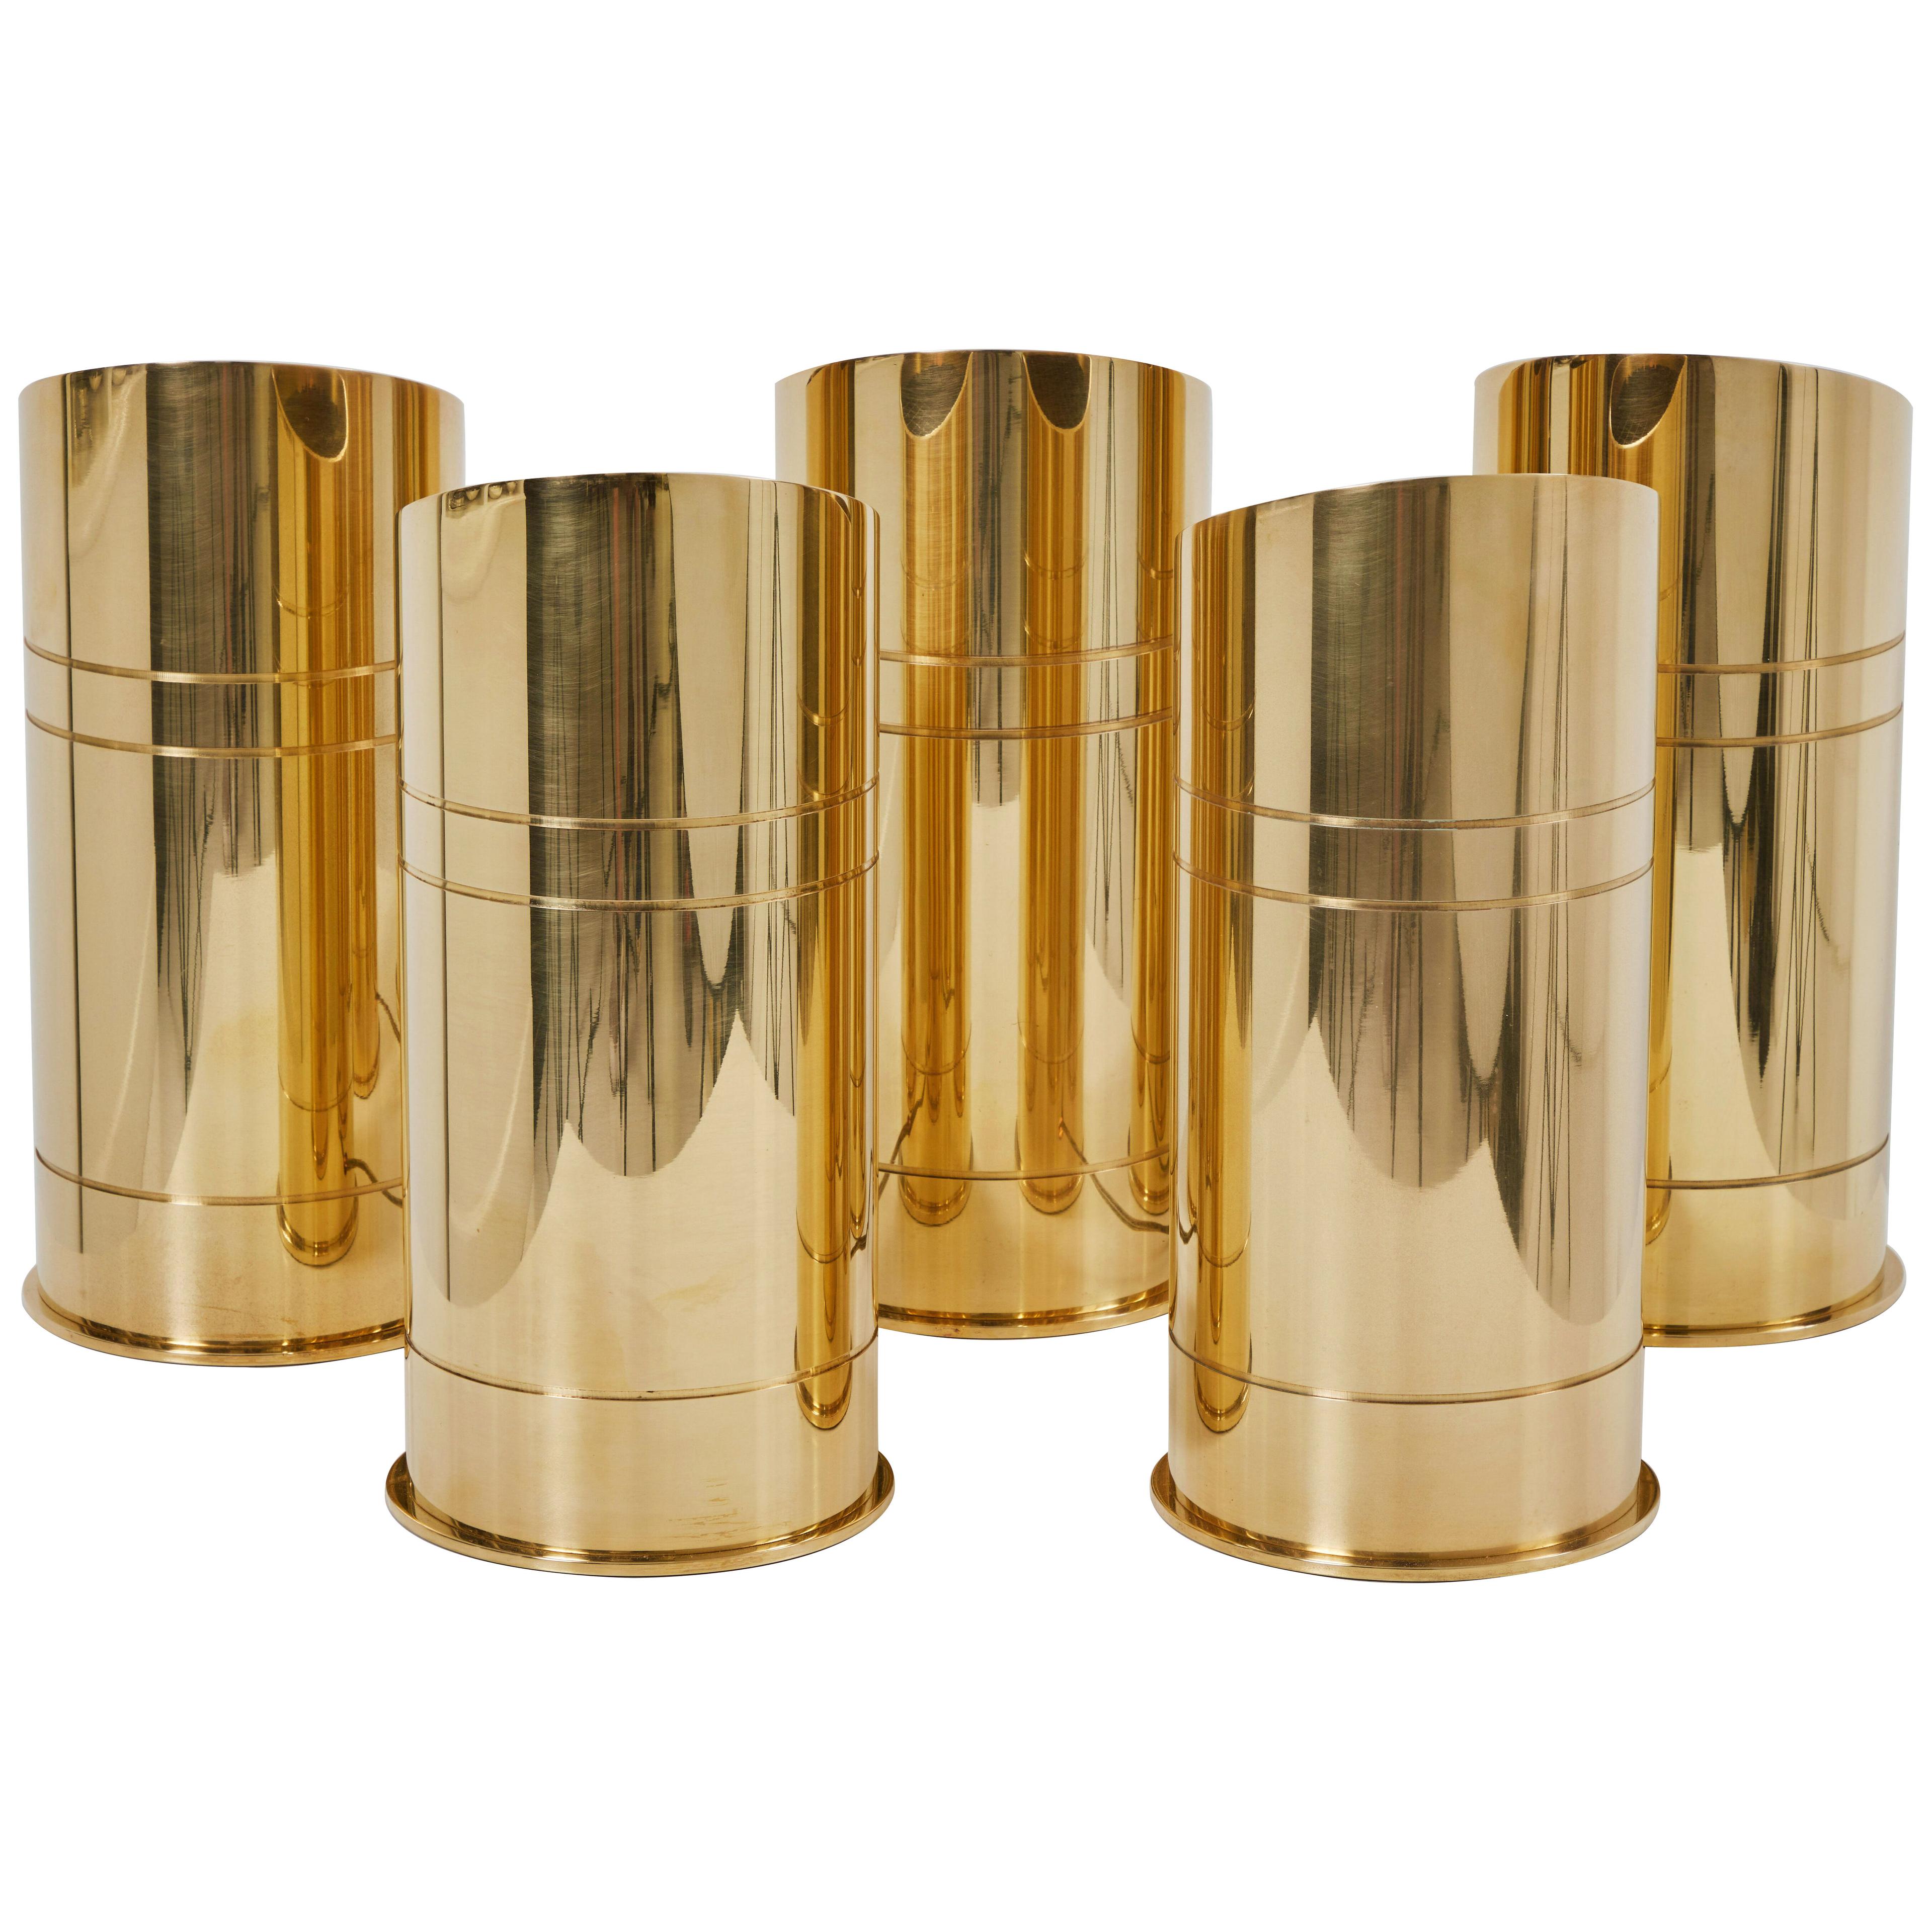 4 Brass "Bullet Floor Lamps" by Karl Springer